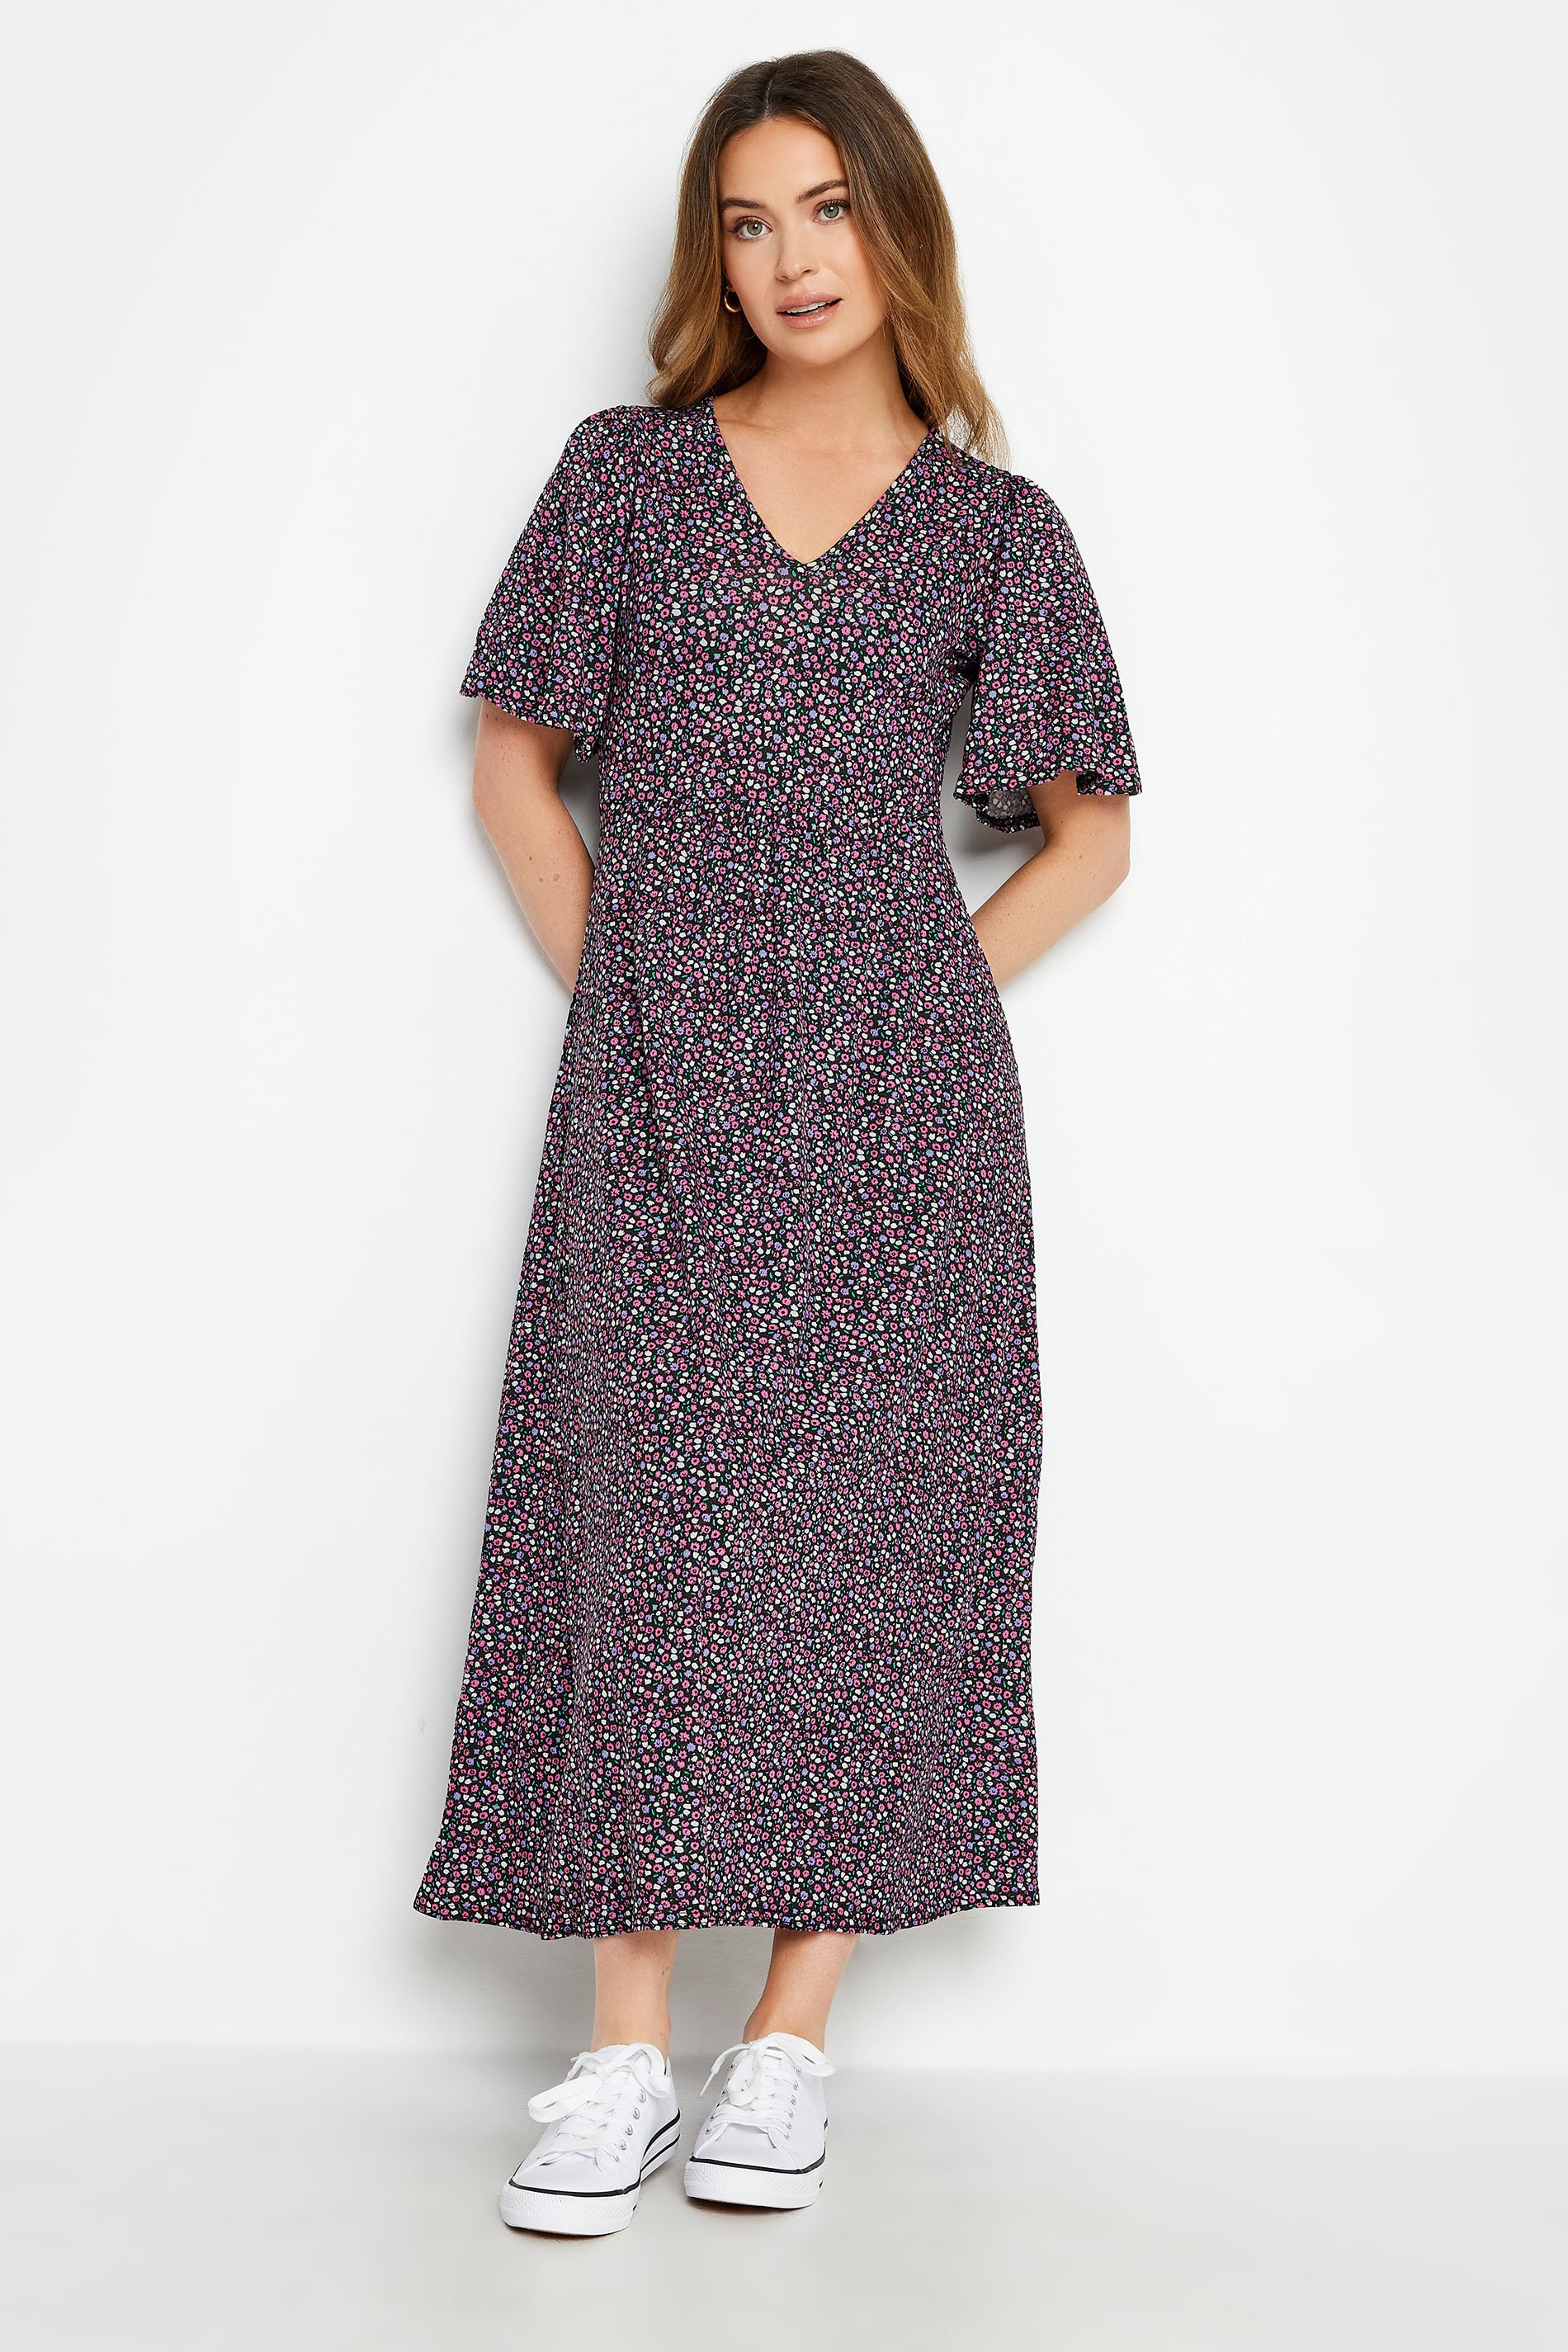 M&Co Petite Purple Ditsy Floral Print Dress | M&Co  1